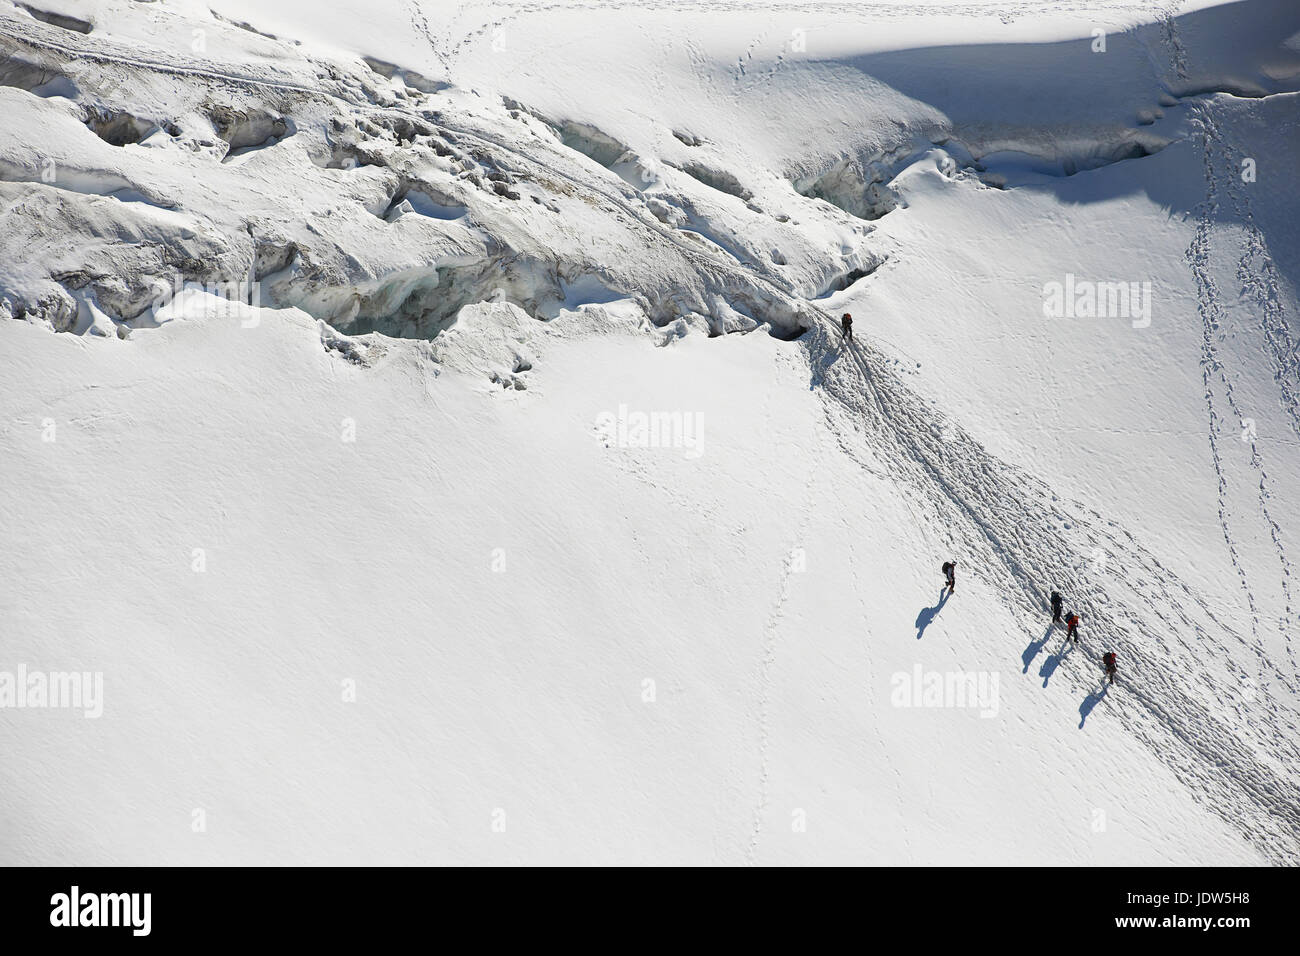 Les alpinistes traversant la neige profonde, high angle Banque D'Images